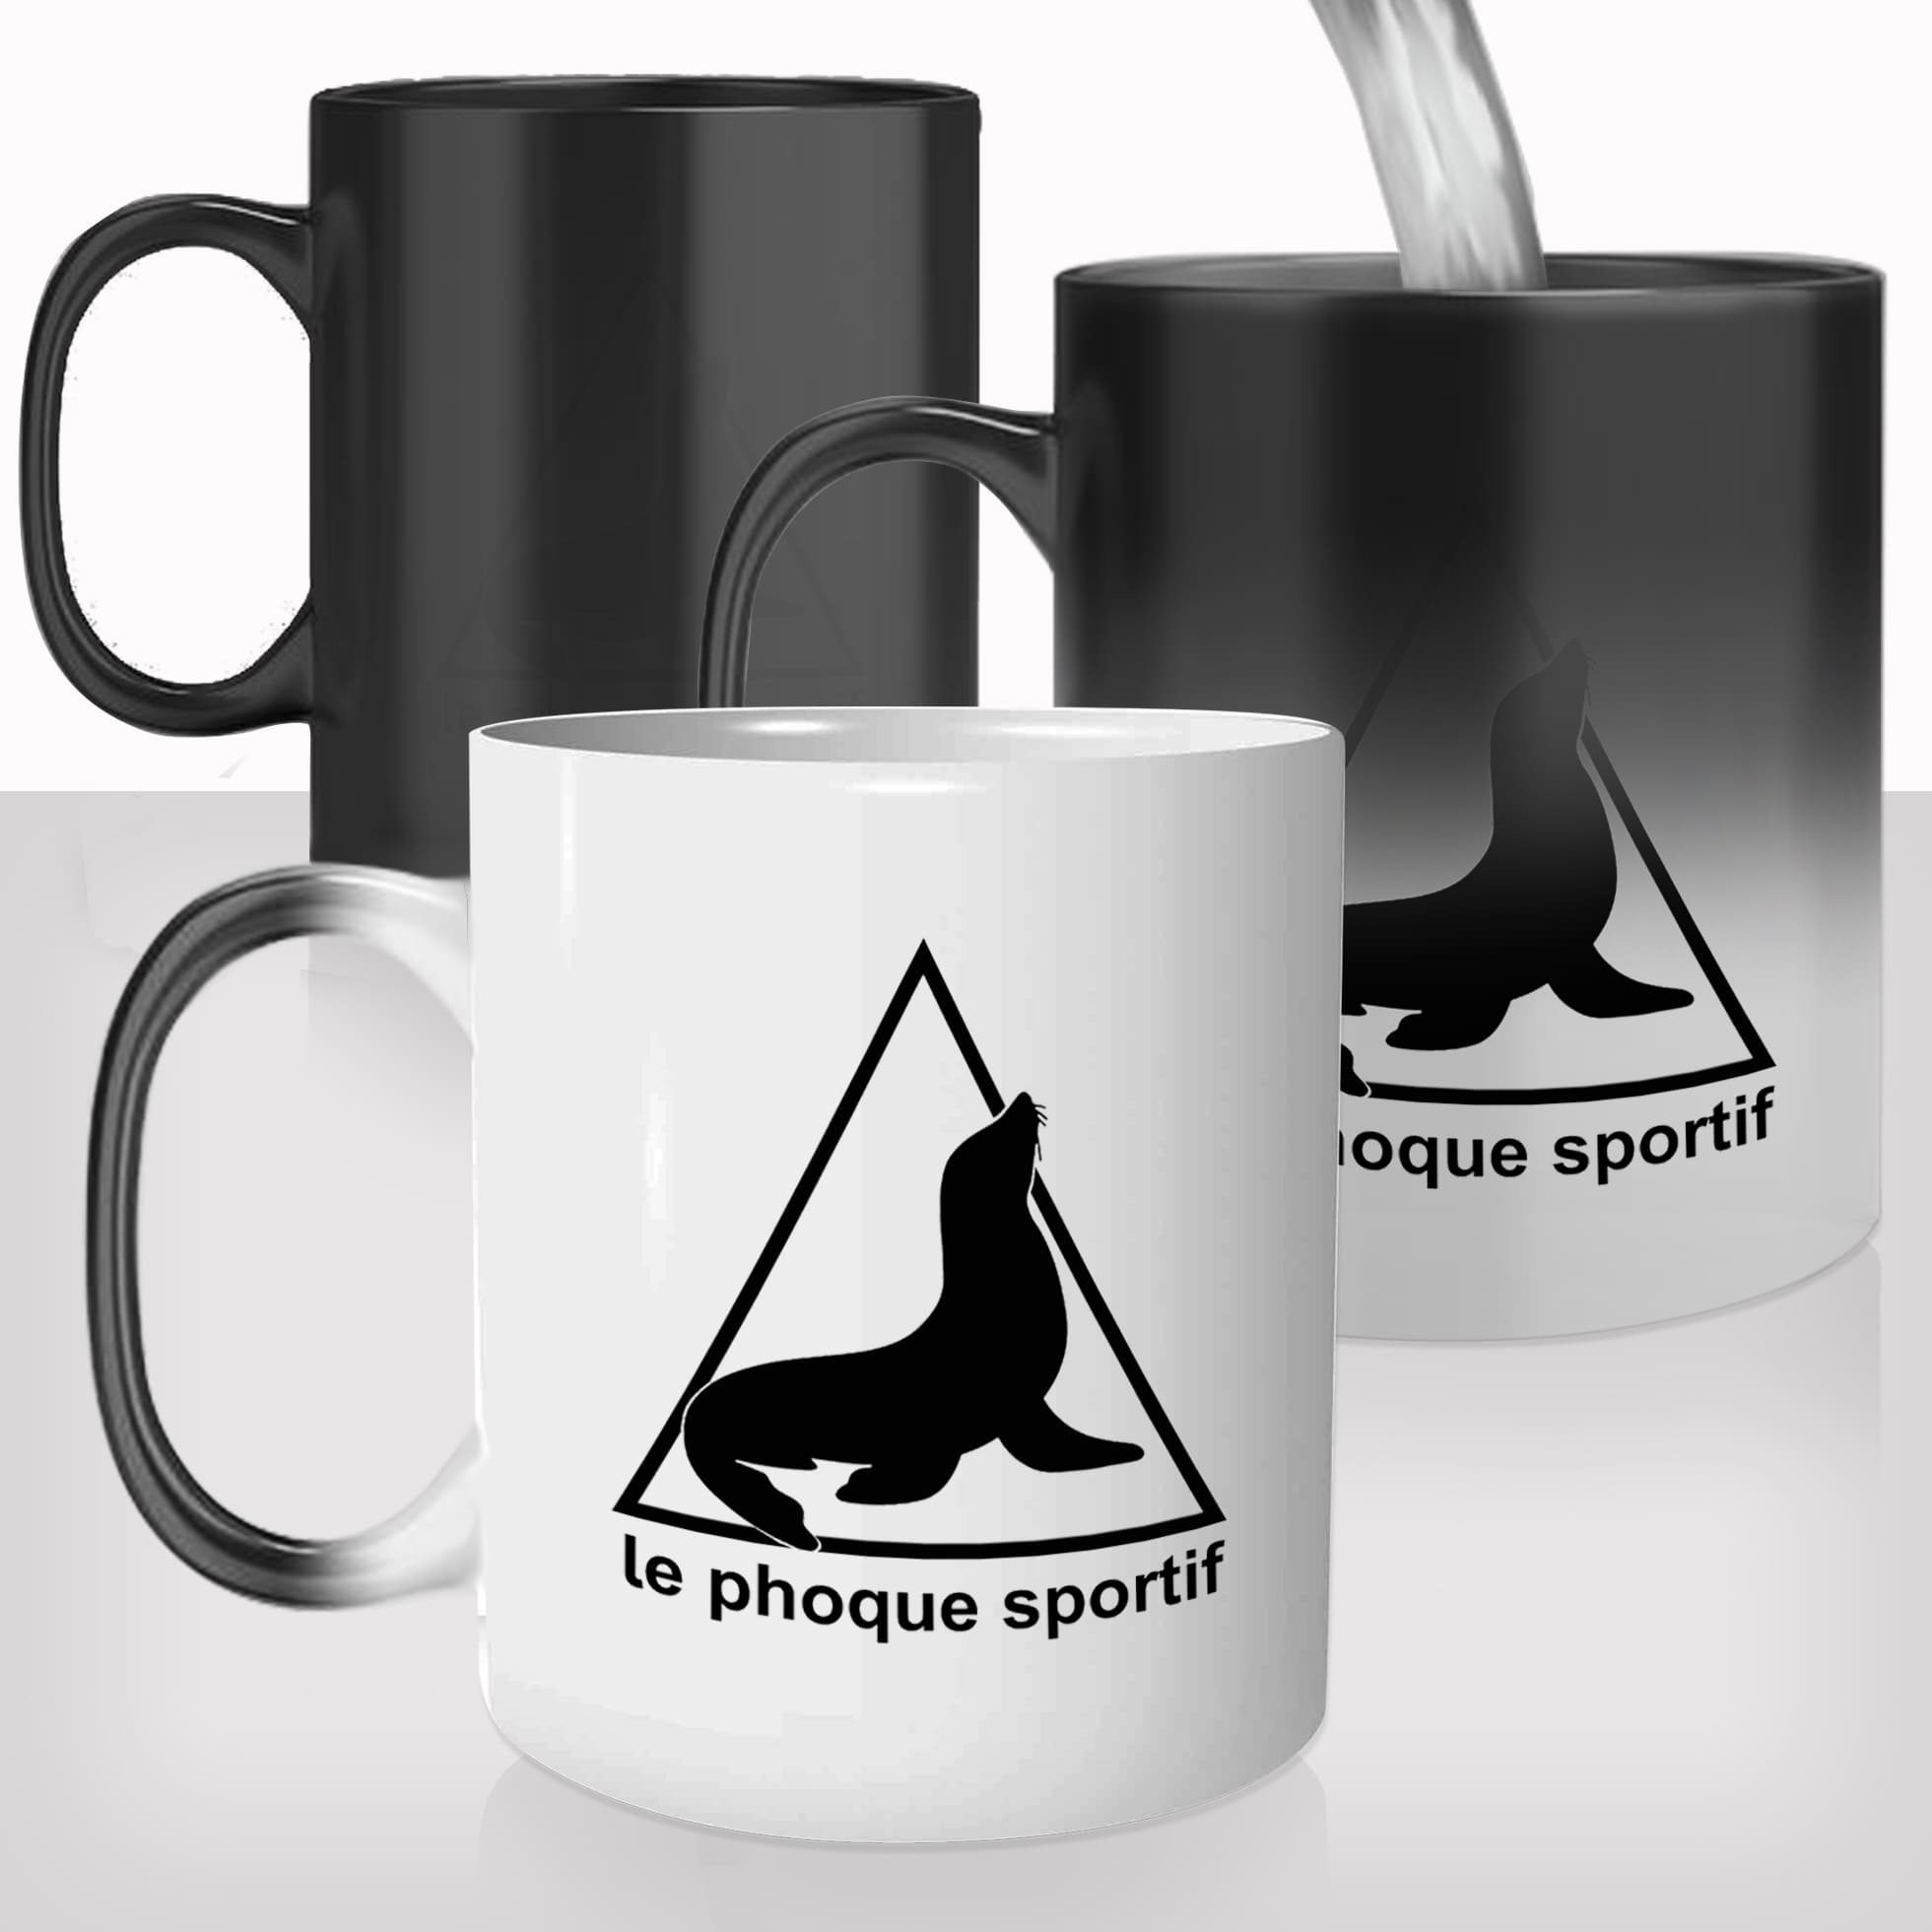 mug-magique-tasse-magic-thermo-reactif-chauffant-le-phoque-sportif-parodie-sport-homme-collegue-photo-personnalisable-cadeau